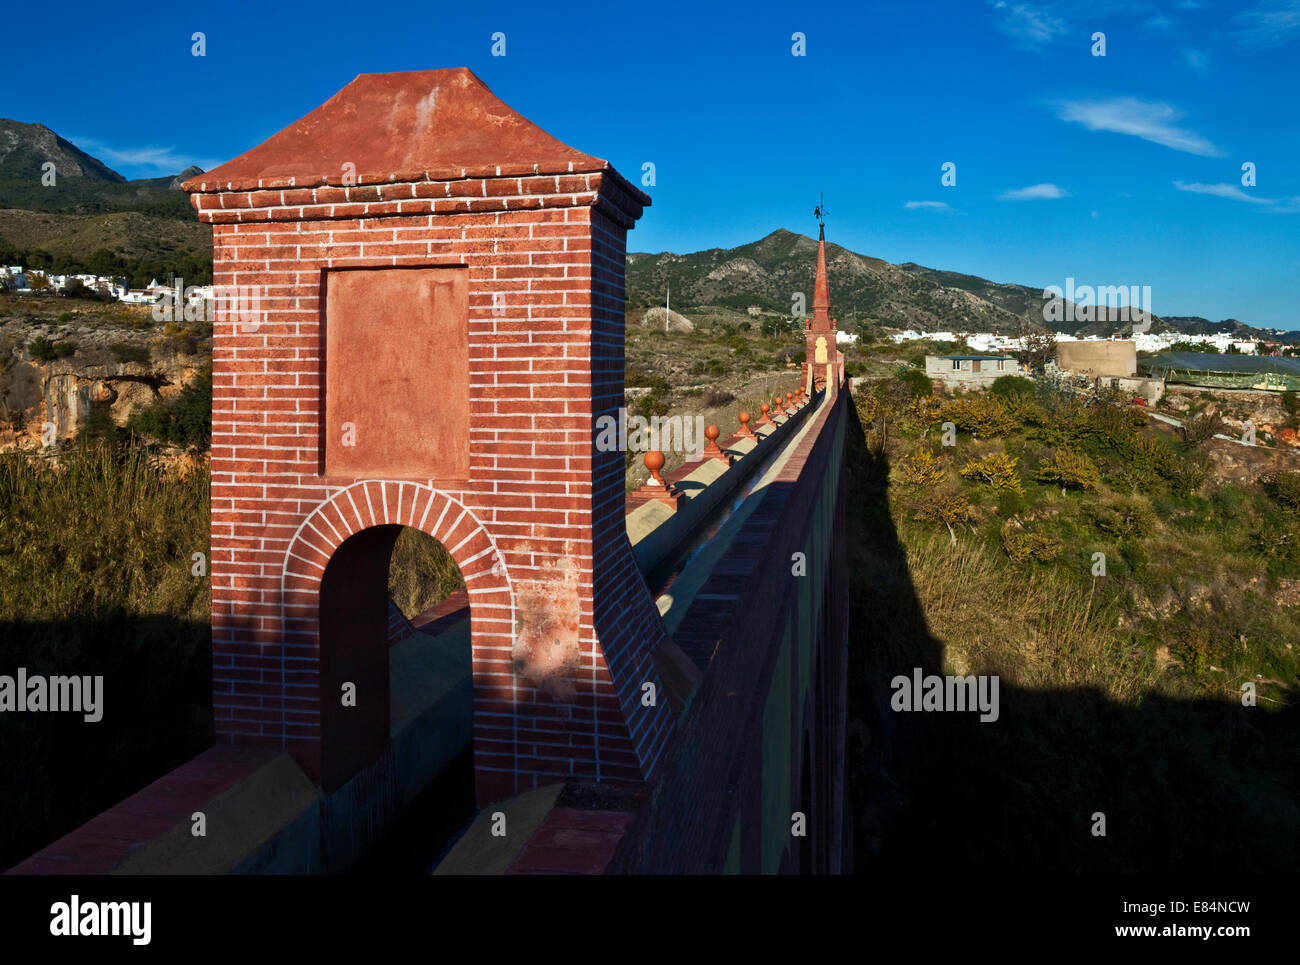 19e C Eagle Aqueduc de l'eau (Acueducto del Águila), entre Nerja, Costa del Sol, la province de Malaga, Andalousie, Espagne Banque D'Images